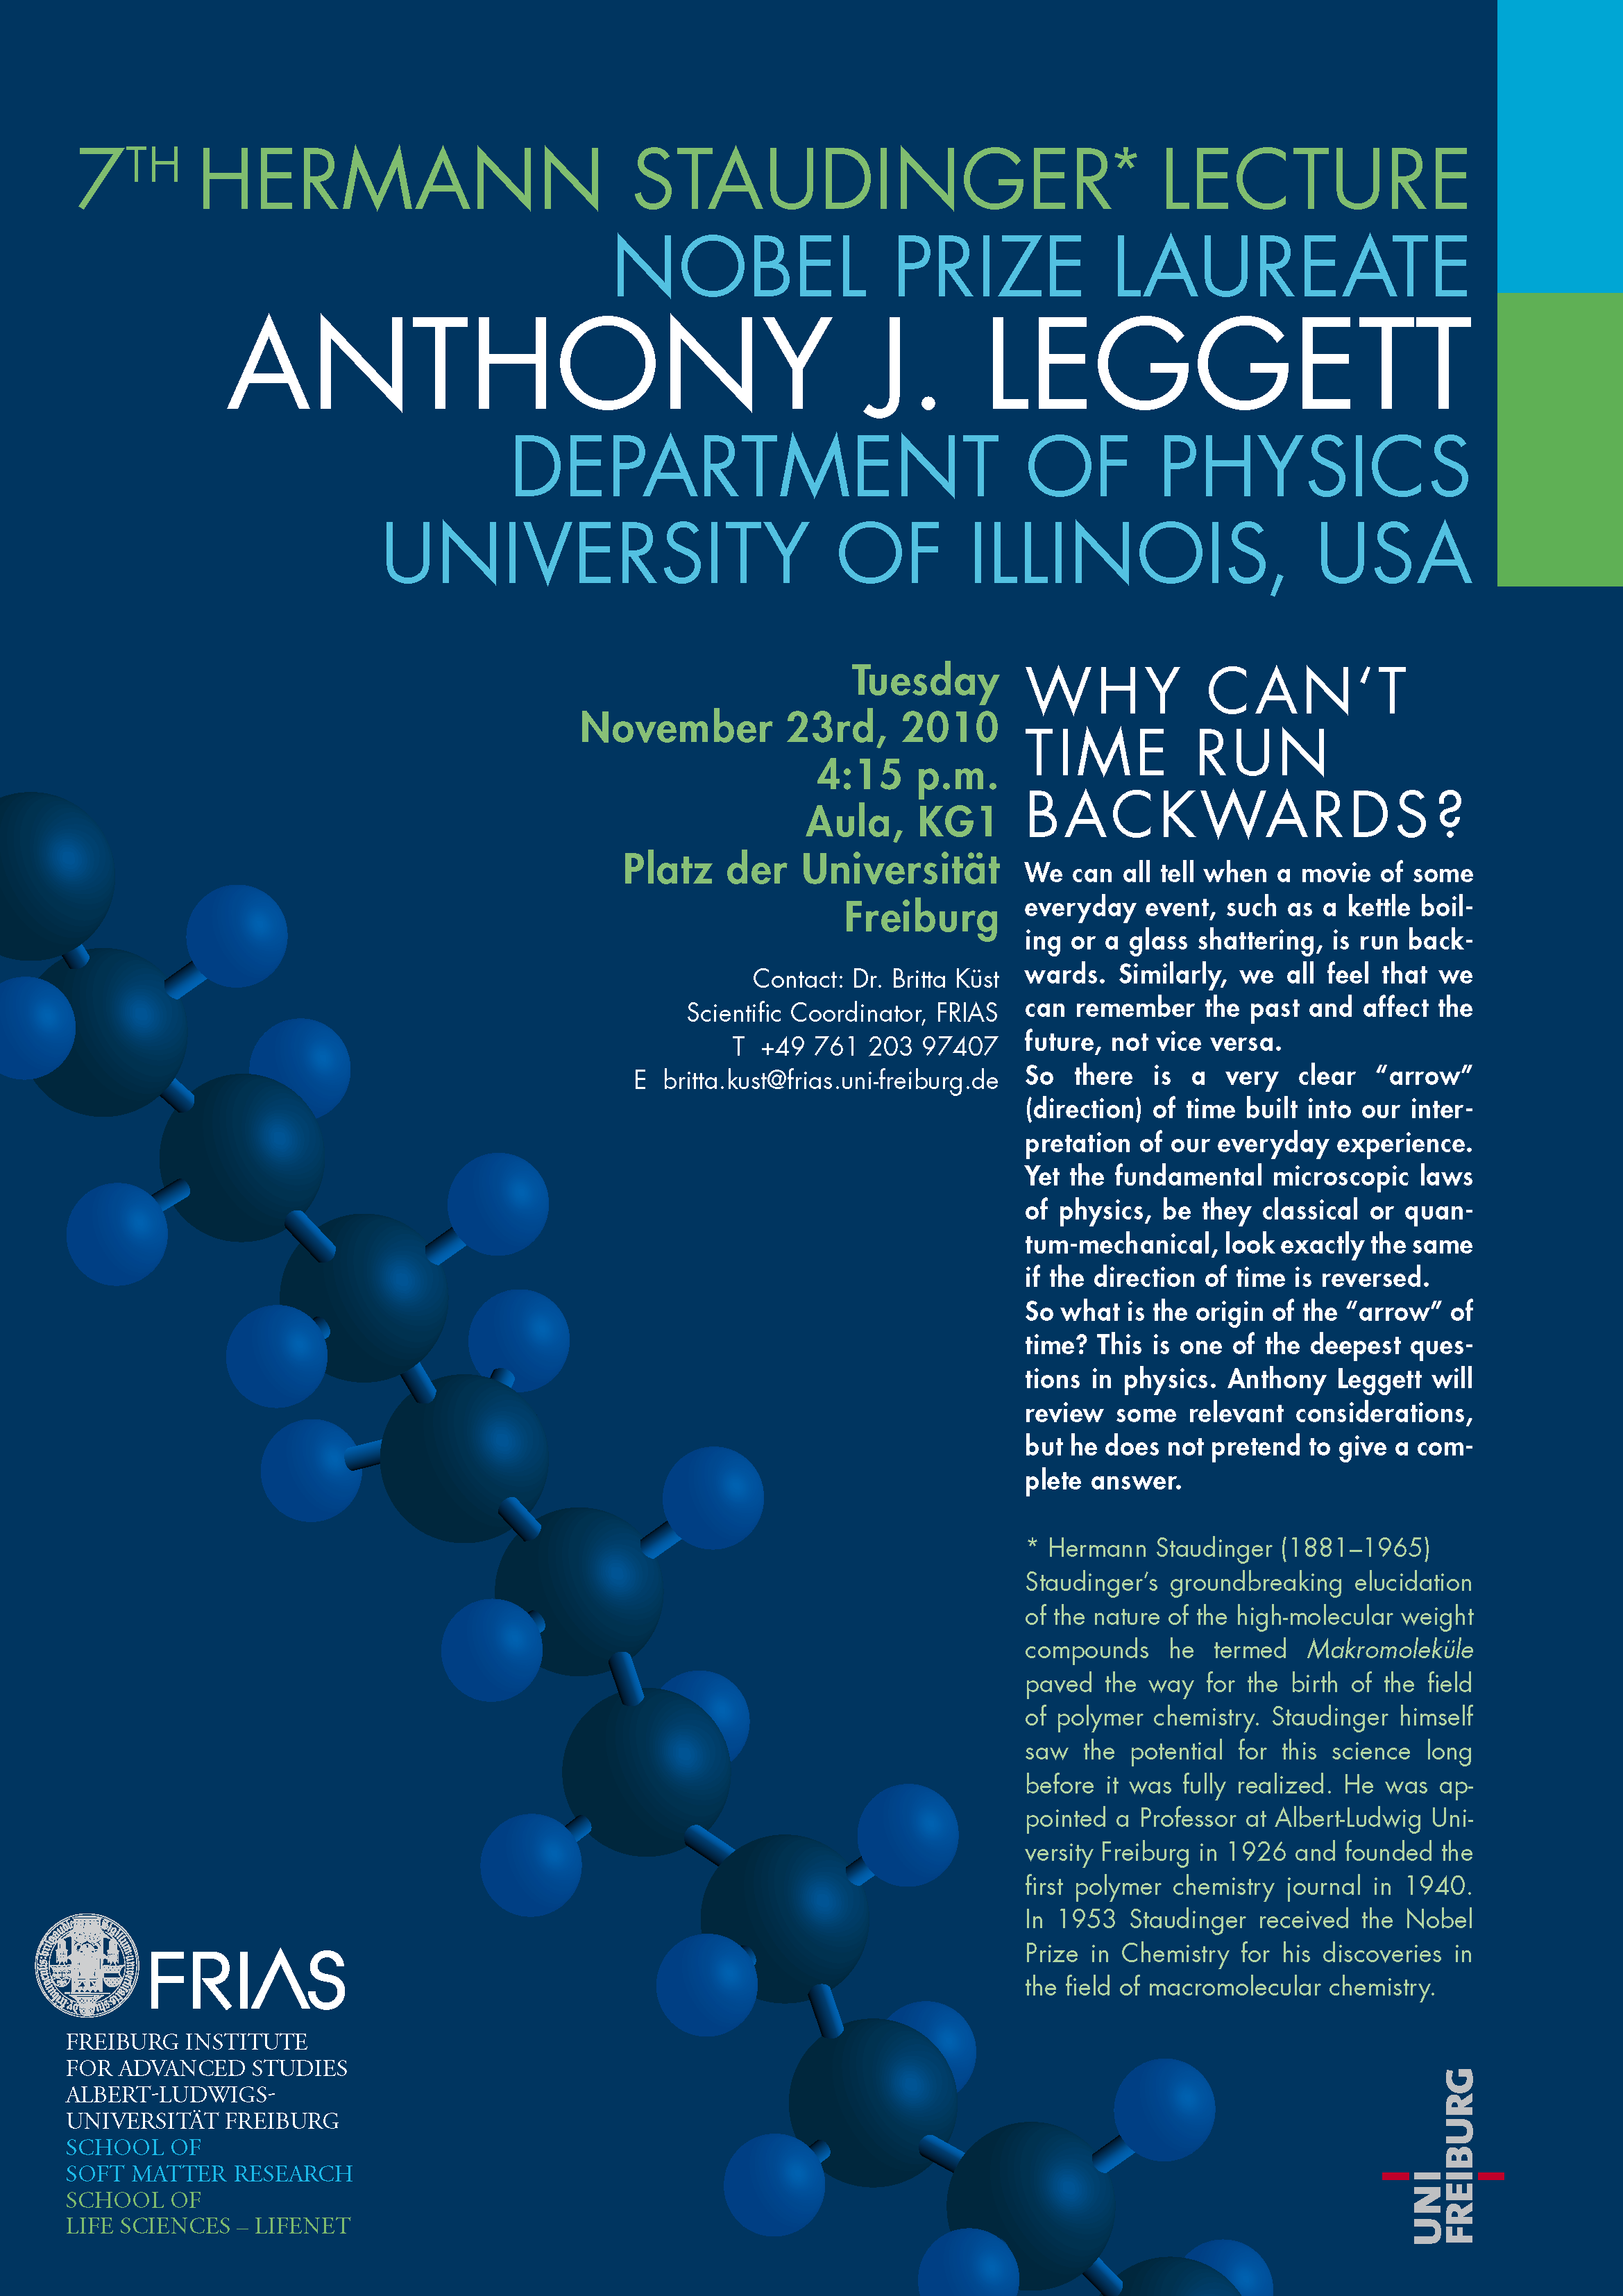 Nobelpreisträger Anthony Leggett hält 7. Hermann Staudinger Lecture